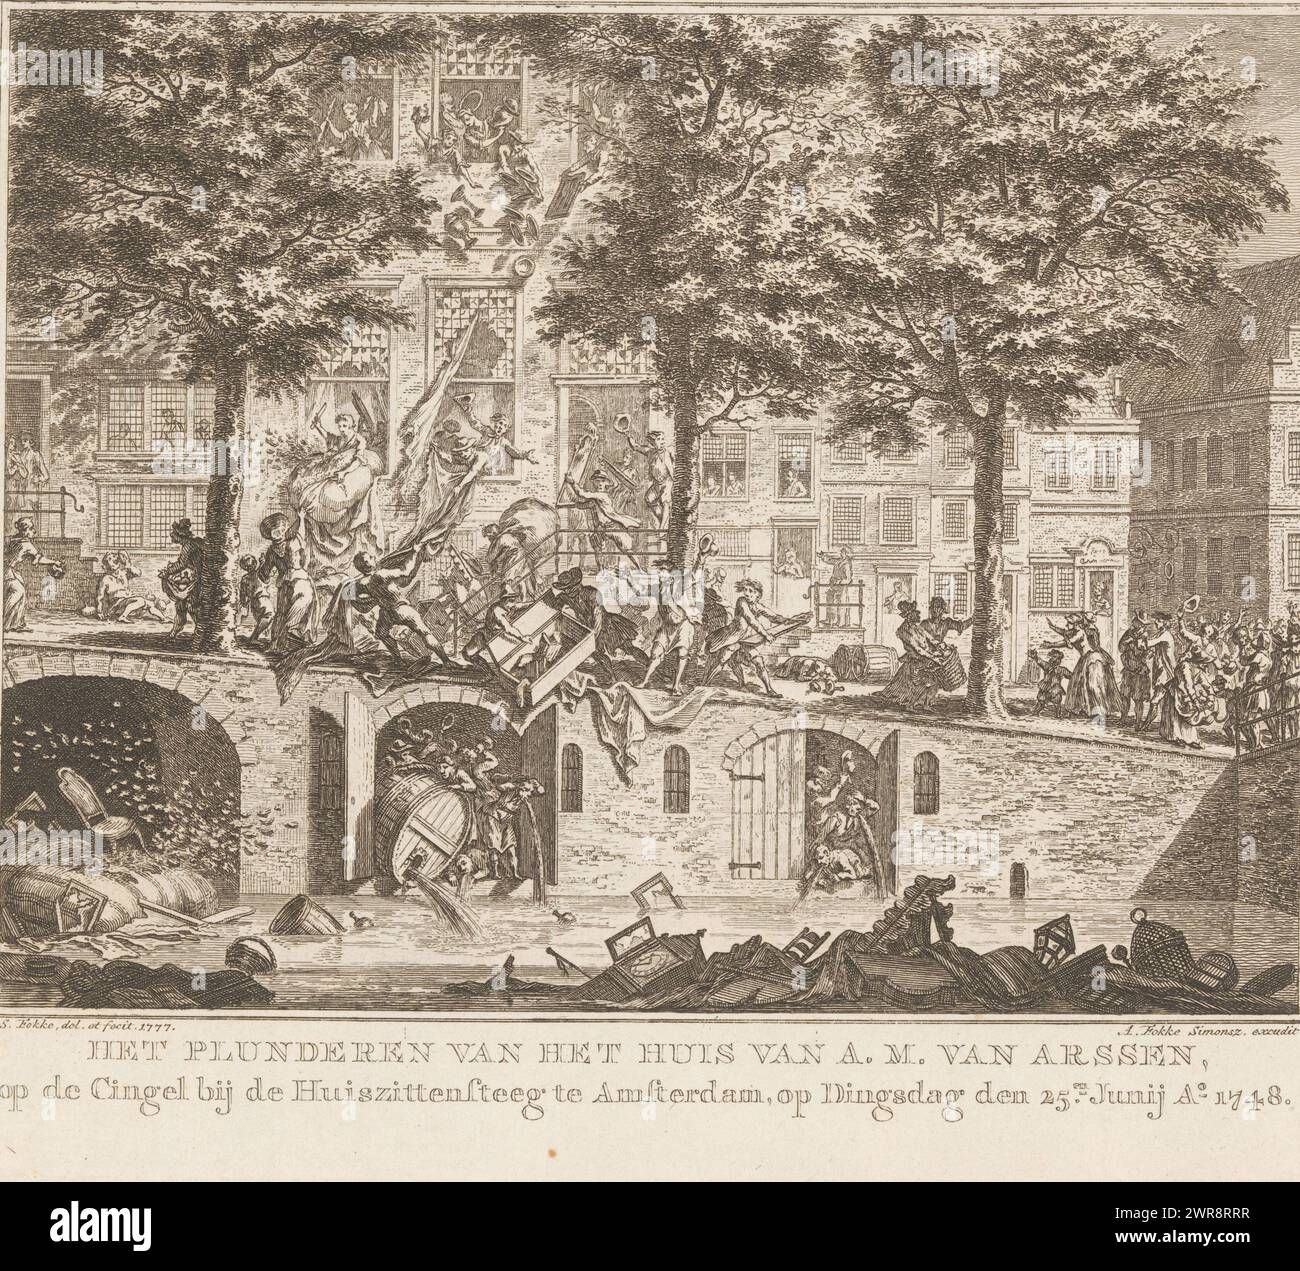 Pillage de la maison de A.M. van Arssen à Amsterdam, 1748, pillage de la maison de A.M. van Arssen, sur le Cingel près du Huiszitsteeg à Amsterdam, le mardi 25 juin Ao 1748 (titre sur objet), le pillage de la maison du locataire fiscal A.M. van Arssen et des entrepôts et caves en dessous à Singel 187 lors de l'émeute de Pachter, le 25 juin 1748. De la maison, les personnages jettent toutes sortes d'articles ménagers dans la rue et dans le canal., imprimeur : Simon Fokke, après sa propre conception par : Simon Fokke, éditeur : Arend Fokke Simonsz., Amsterdam, 1777, papier, gravure Banque D'Images